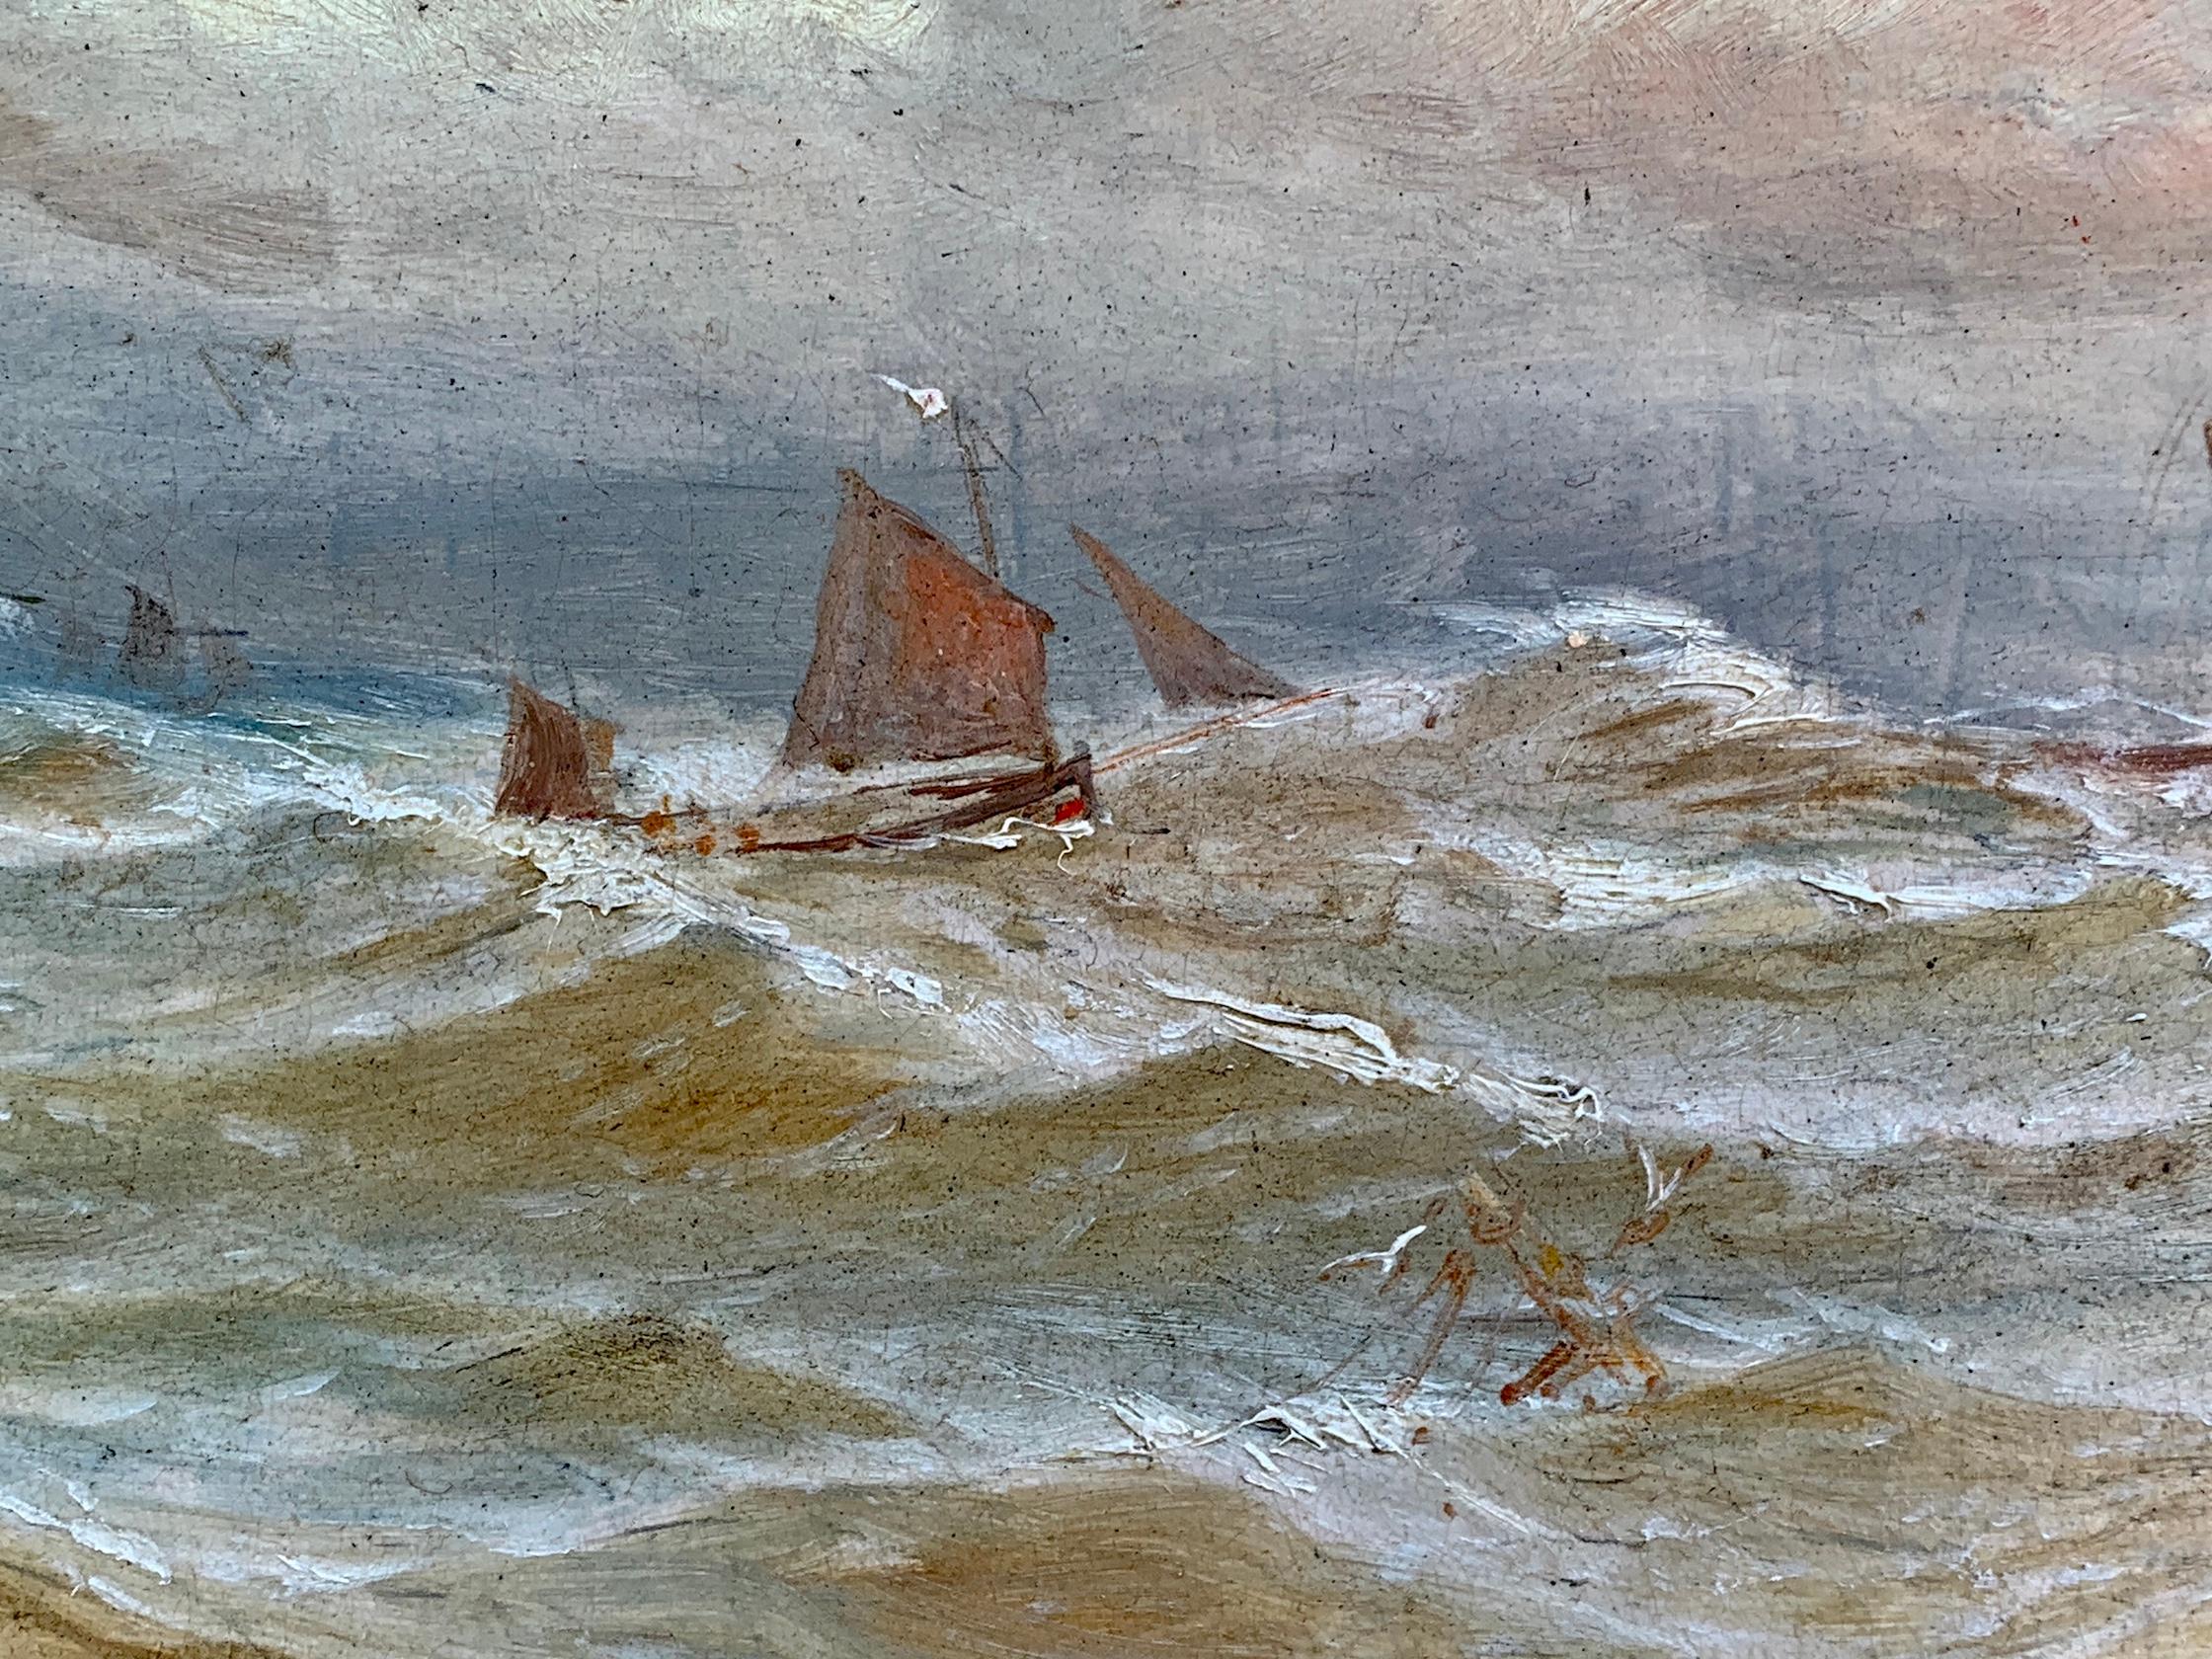 Britisches Öl aus dem 19. Jahrhundert, Schiff in rauer See.

Der Stil des Gemäldes ähnelt sehr den Arbeiten von Bernard Benedict Hemy, einem bekannten britischen Marinemaler aus Nordengland.

Er malte in einem gut beobachteten, qualitativ